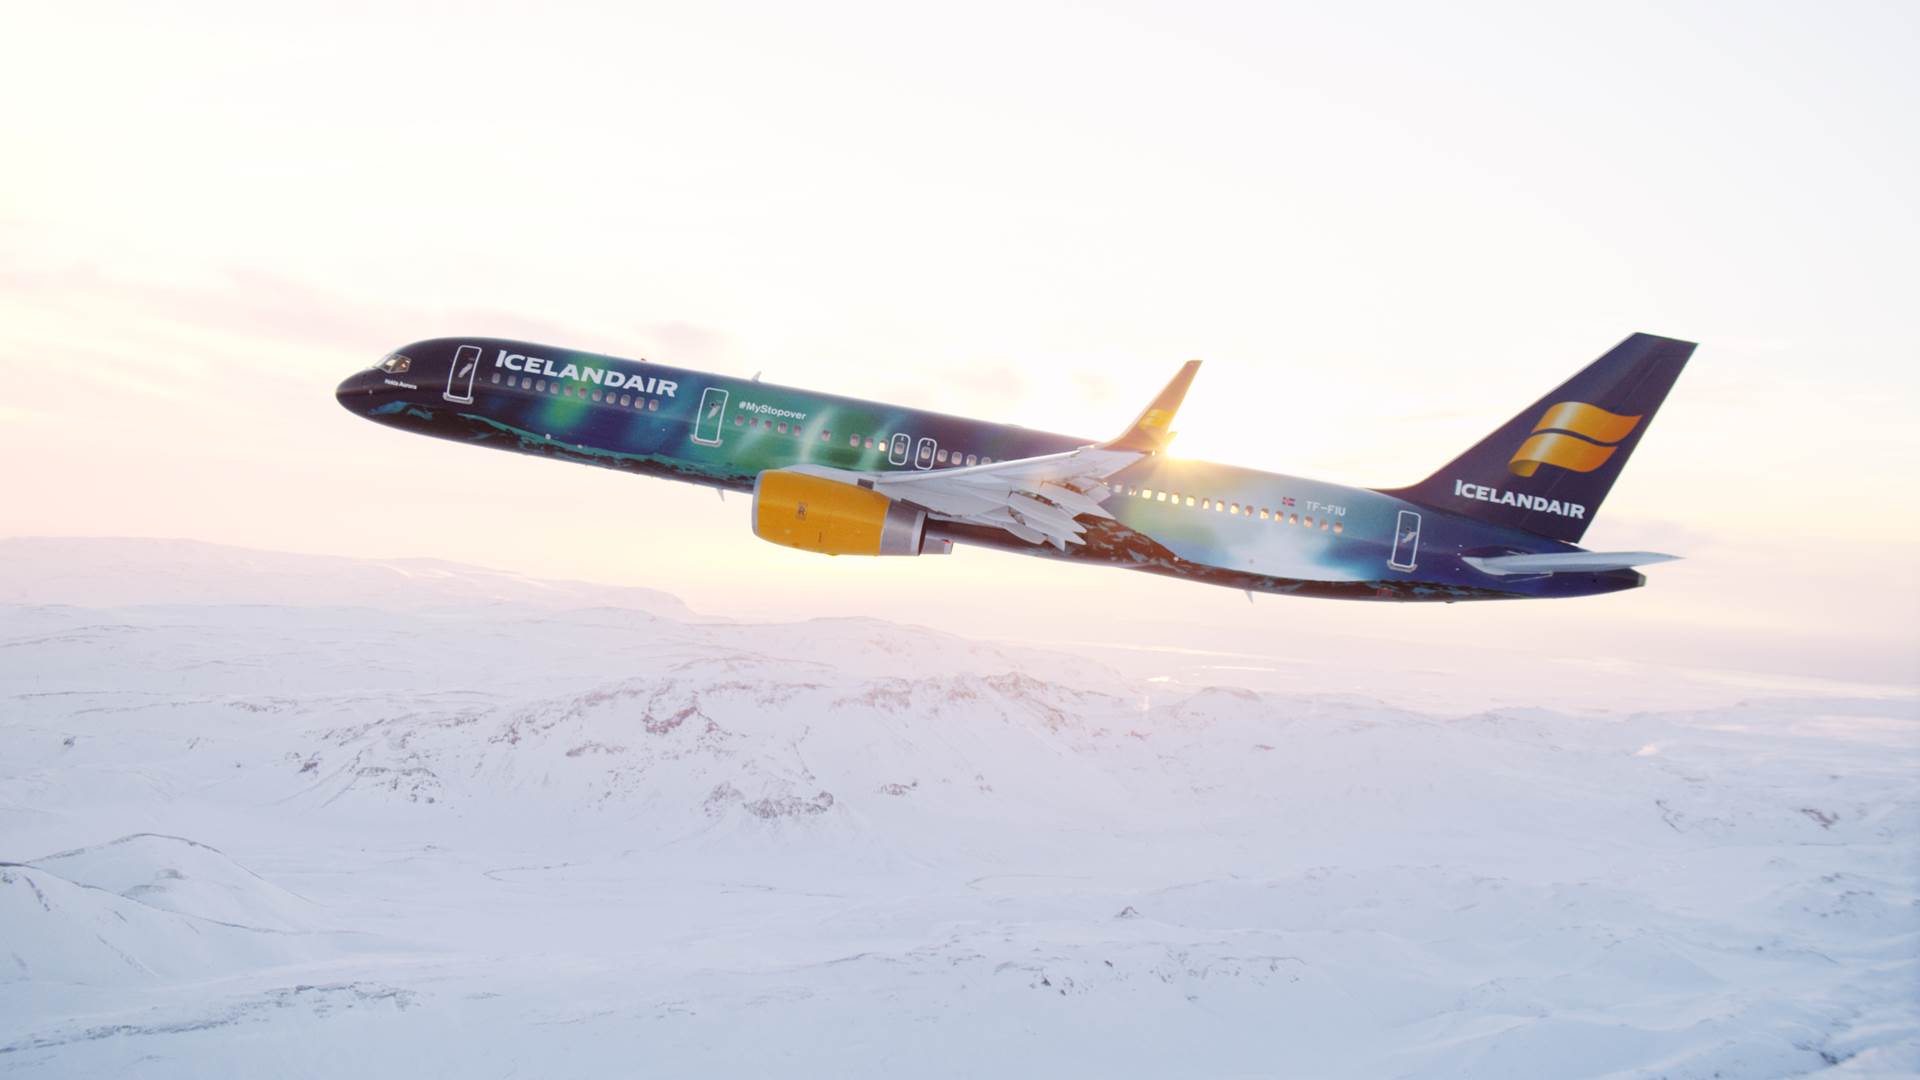 Hekla Aurora, farþegaflugvél Icelandair. - mynd